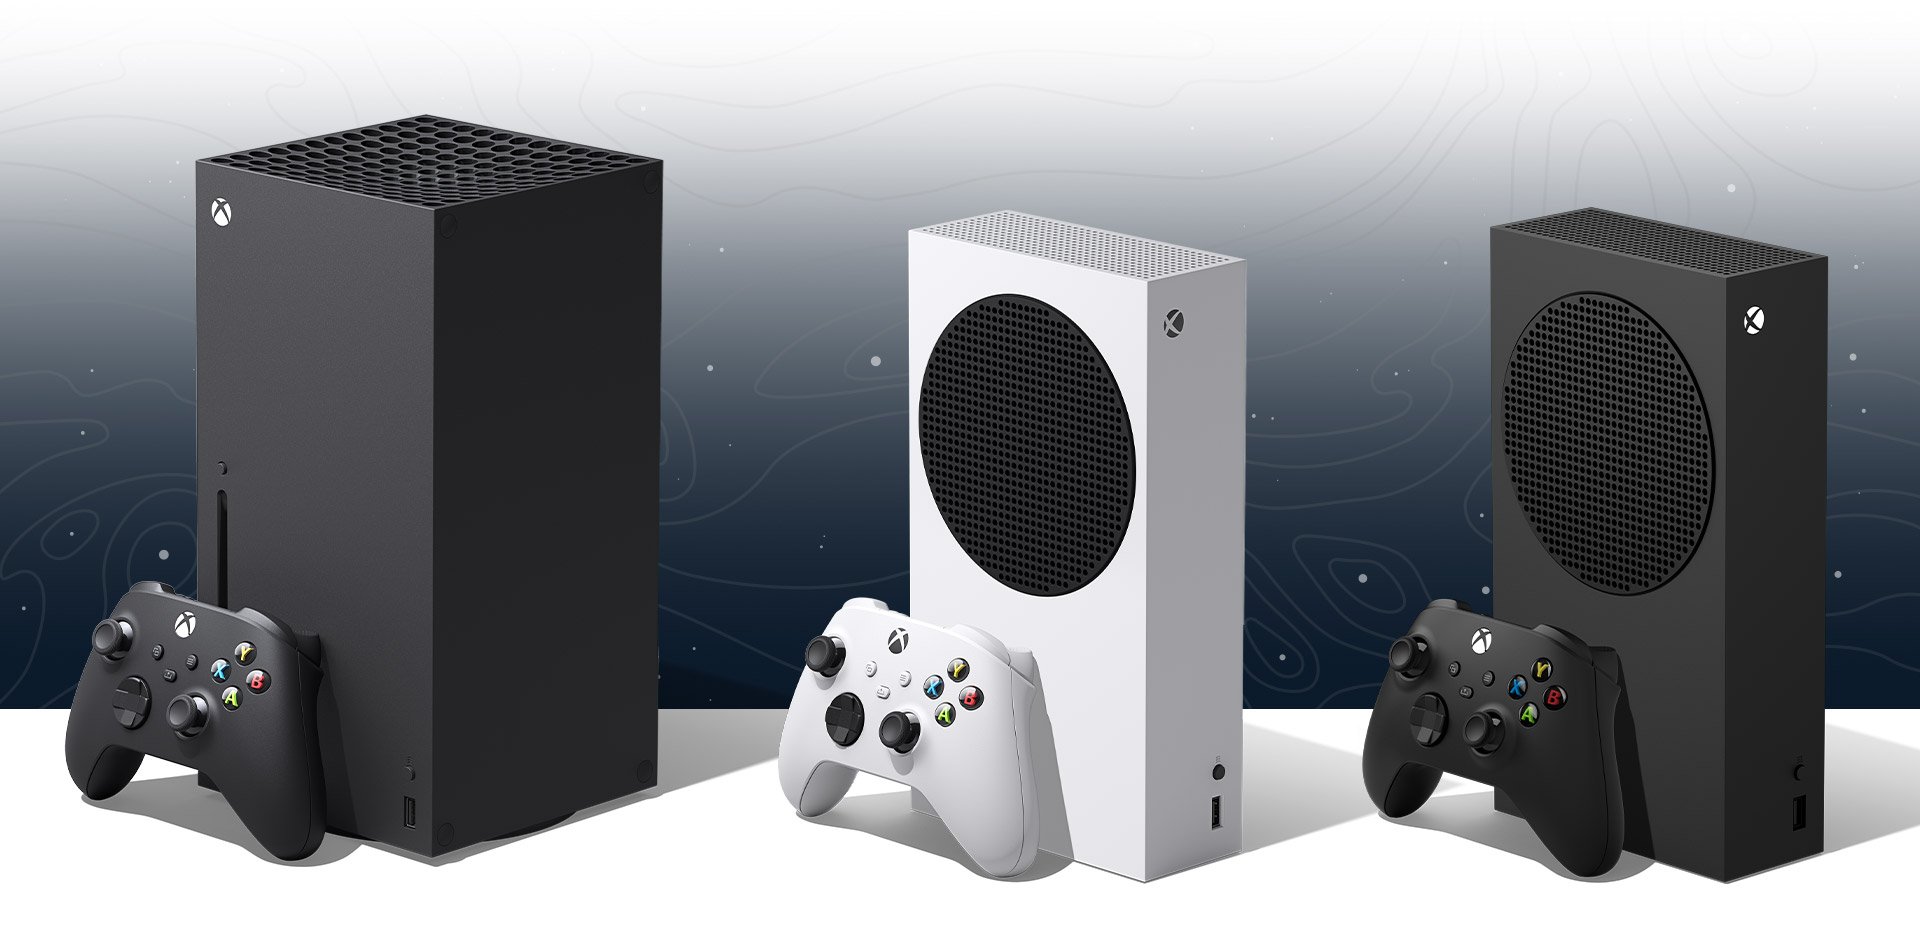 Alguns editores estão questionando o suporte do Xbox em meio a vendas “estáveis”.